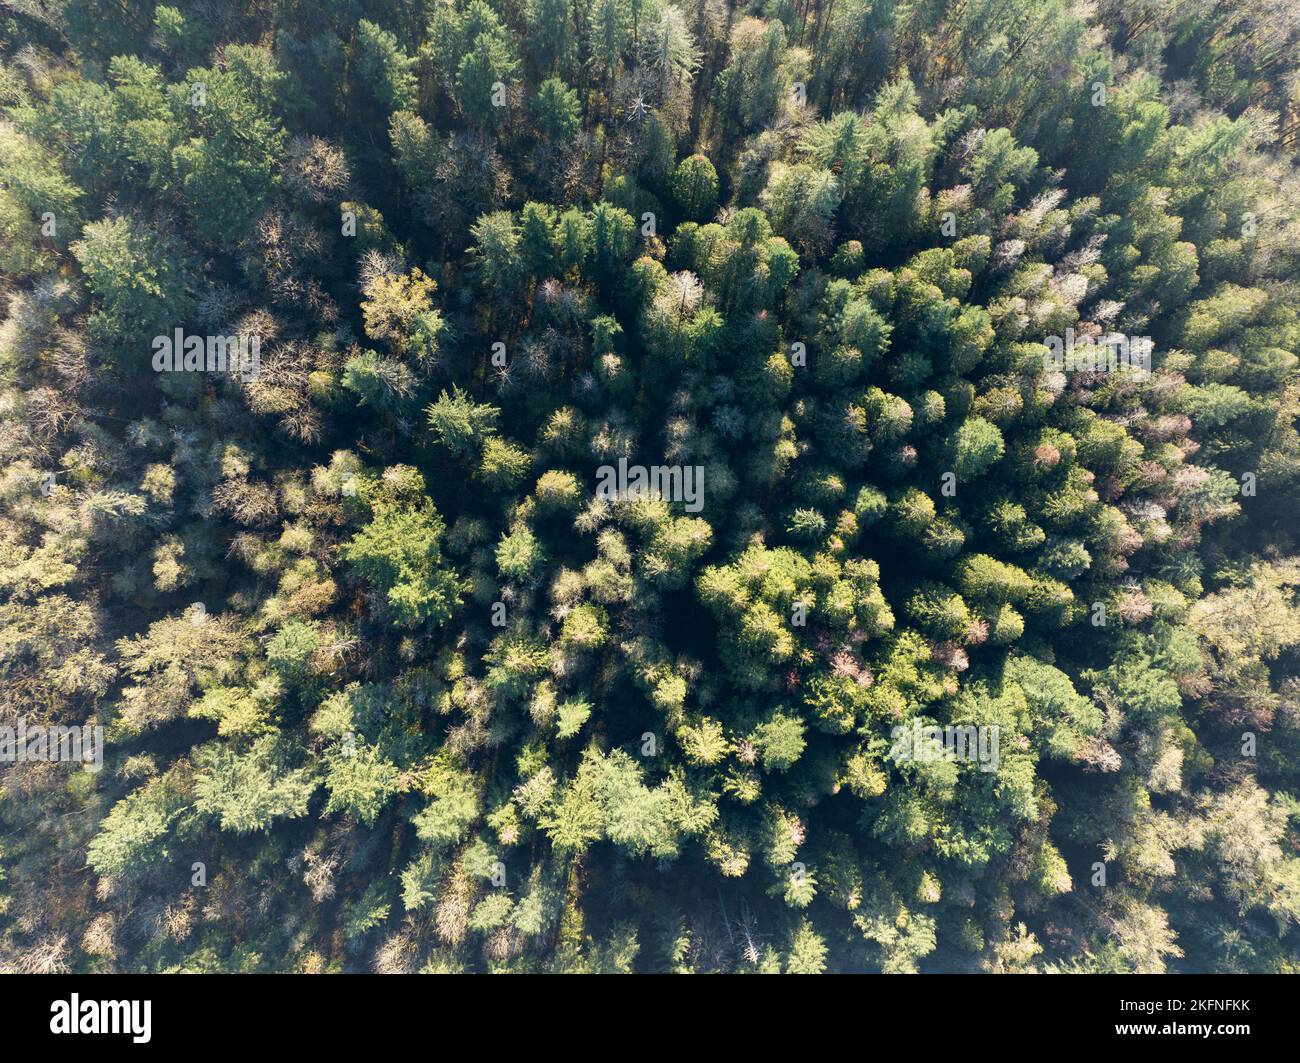 Ein gesunder Wald in der Nähe von Mount Hood, Oregon, ist aus der Vogelperspektive zu sehen. Wälder bedecken große Landstriche im pazifischen Nordwesten der USA Stockfoto